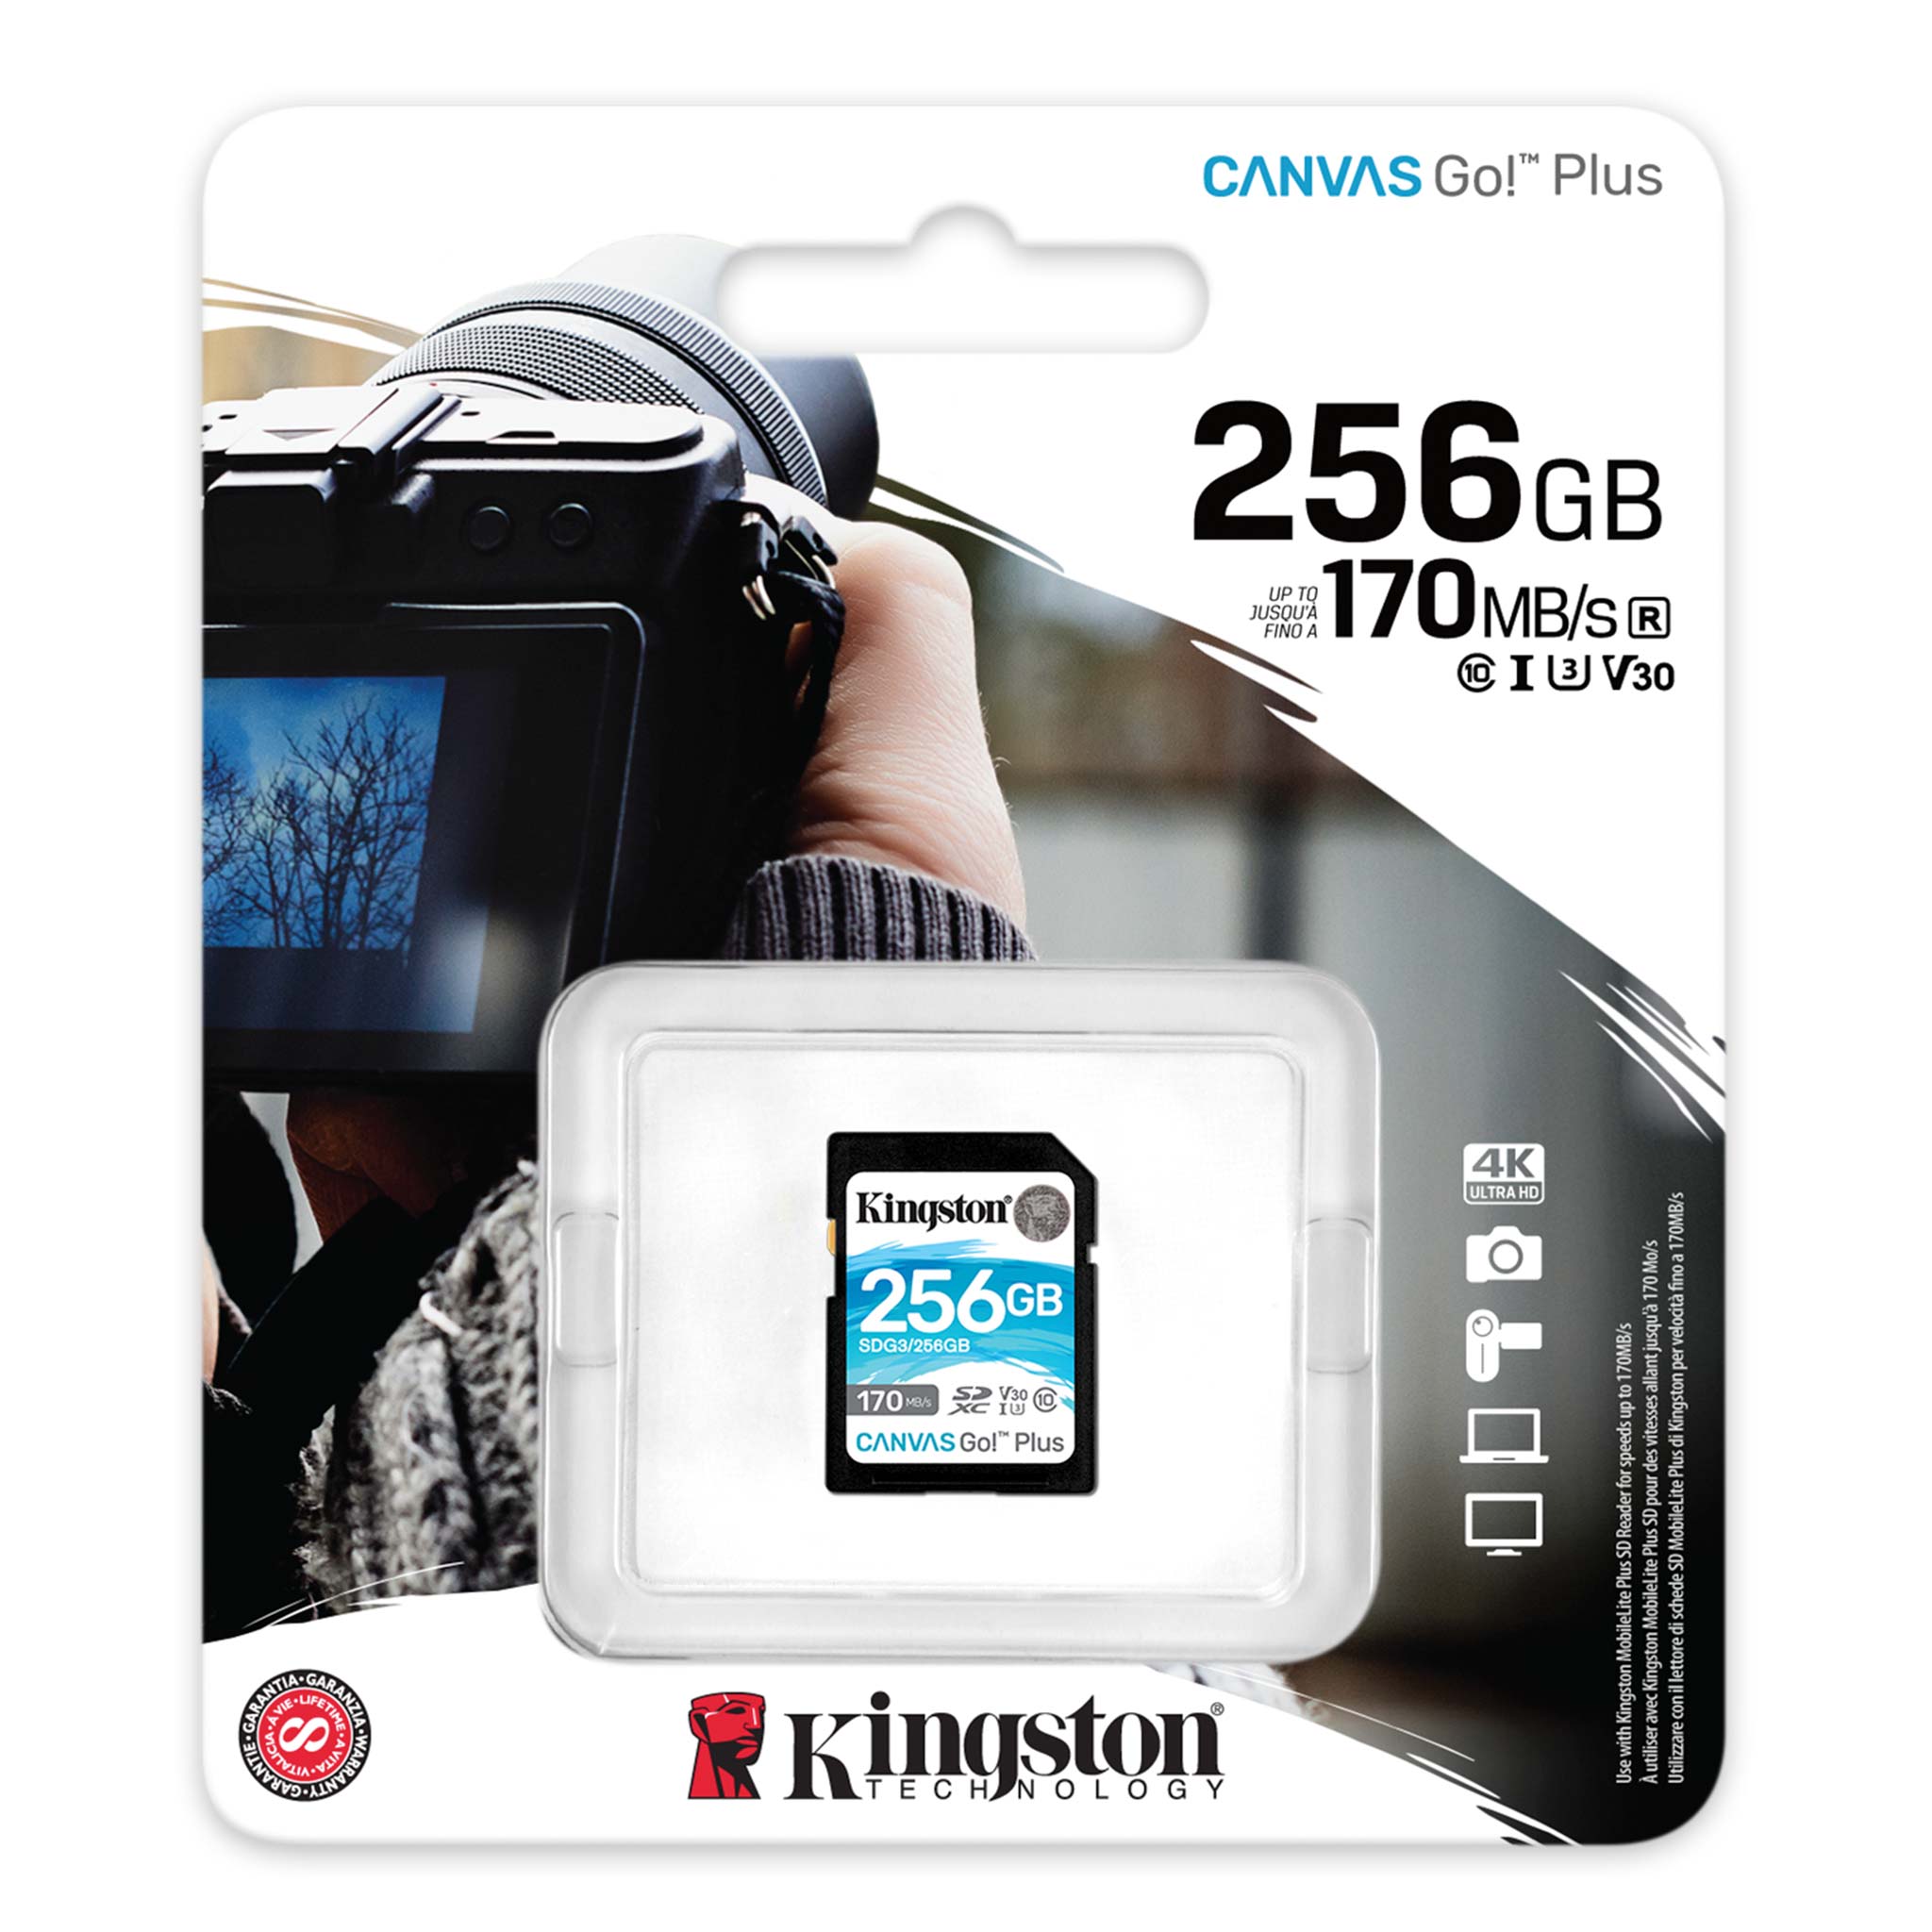 Kingston Kingston 256Go Canvas Go Plus microSDXC V30 Class10 Carte Mémoire TF 170MB/s 